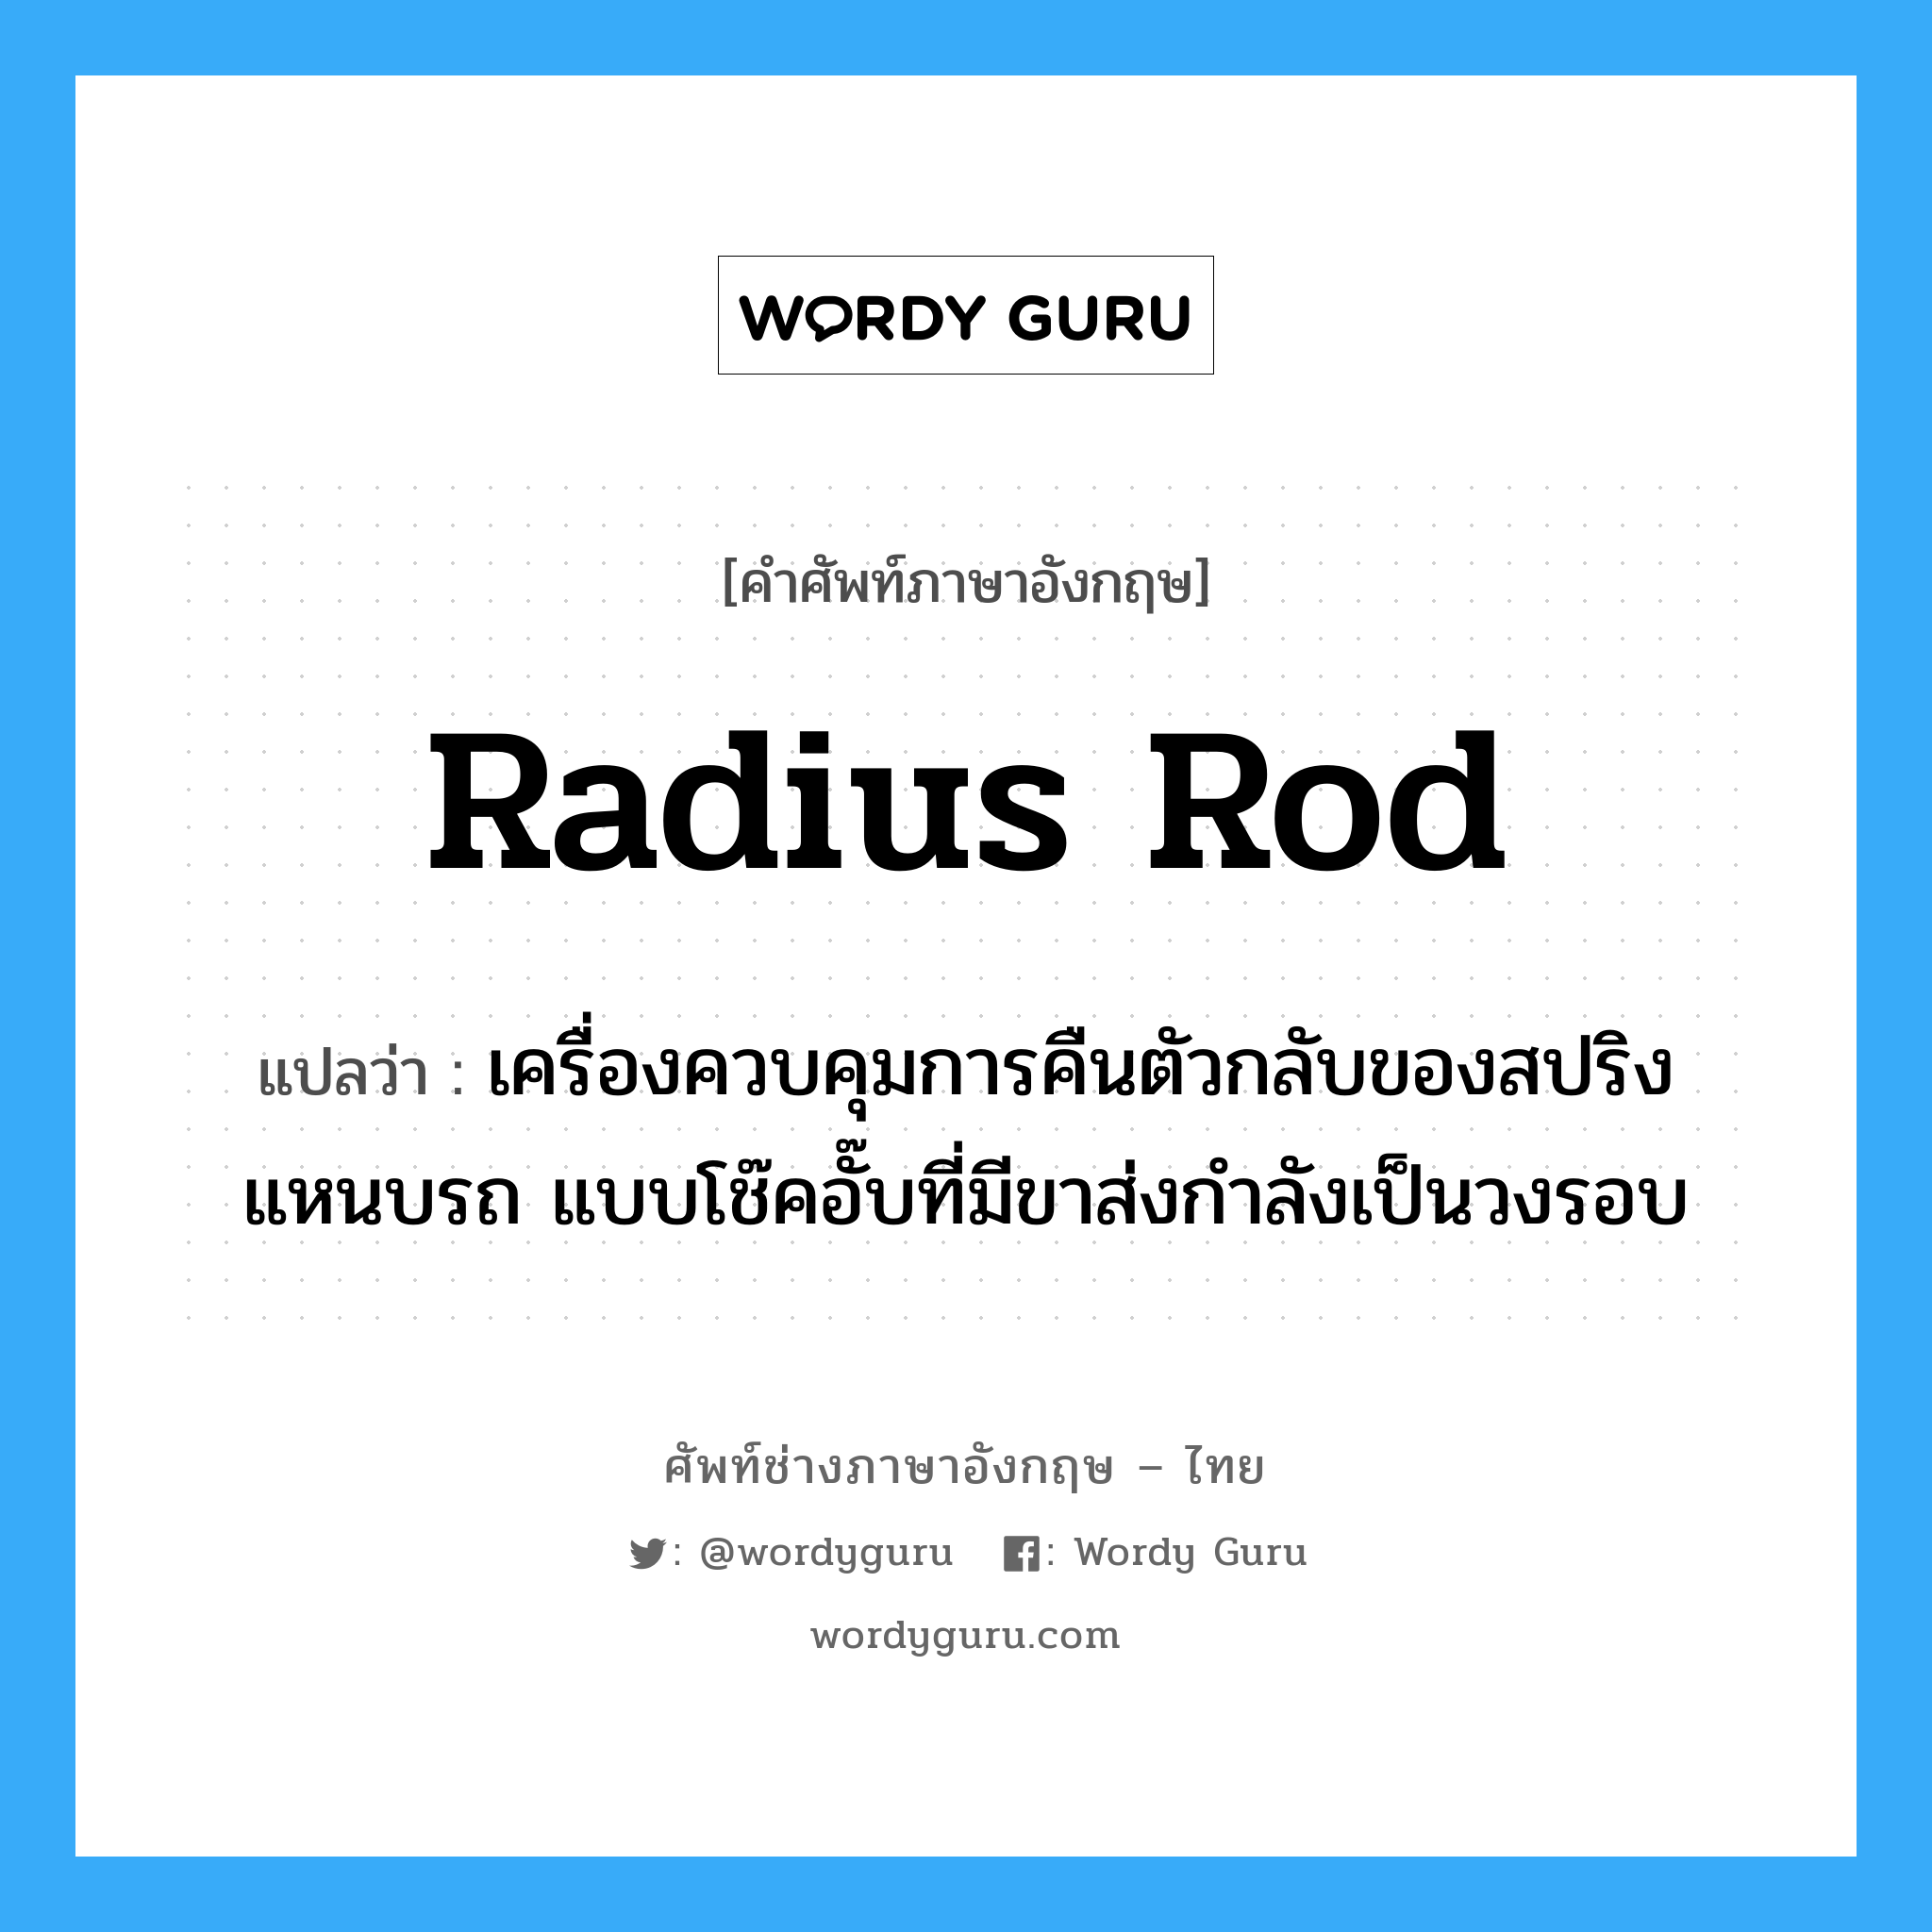 radius rod แปลว่า?, คำศัพท์ช่างภาษาอังกฤษ - ไทย radius rod คำศัพท์ภาษาอังกฤษ radius rod แปลว่า เครื่องควบคุมการคืนตัวกลับของสปริงแหนบรถ แบบโช๊คอั๊บที่มีขาส่งกำลังเป็นวงรอบ